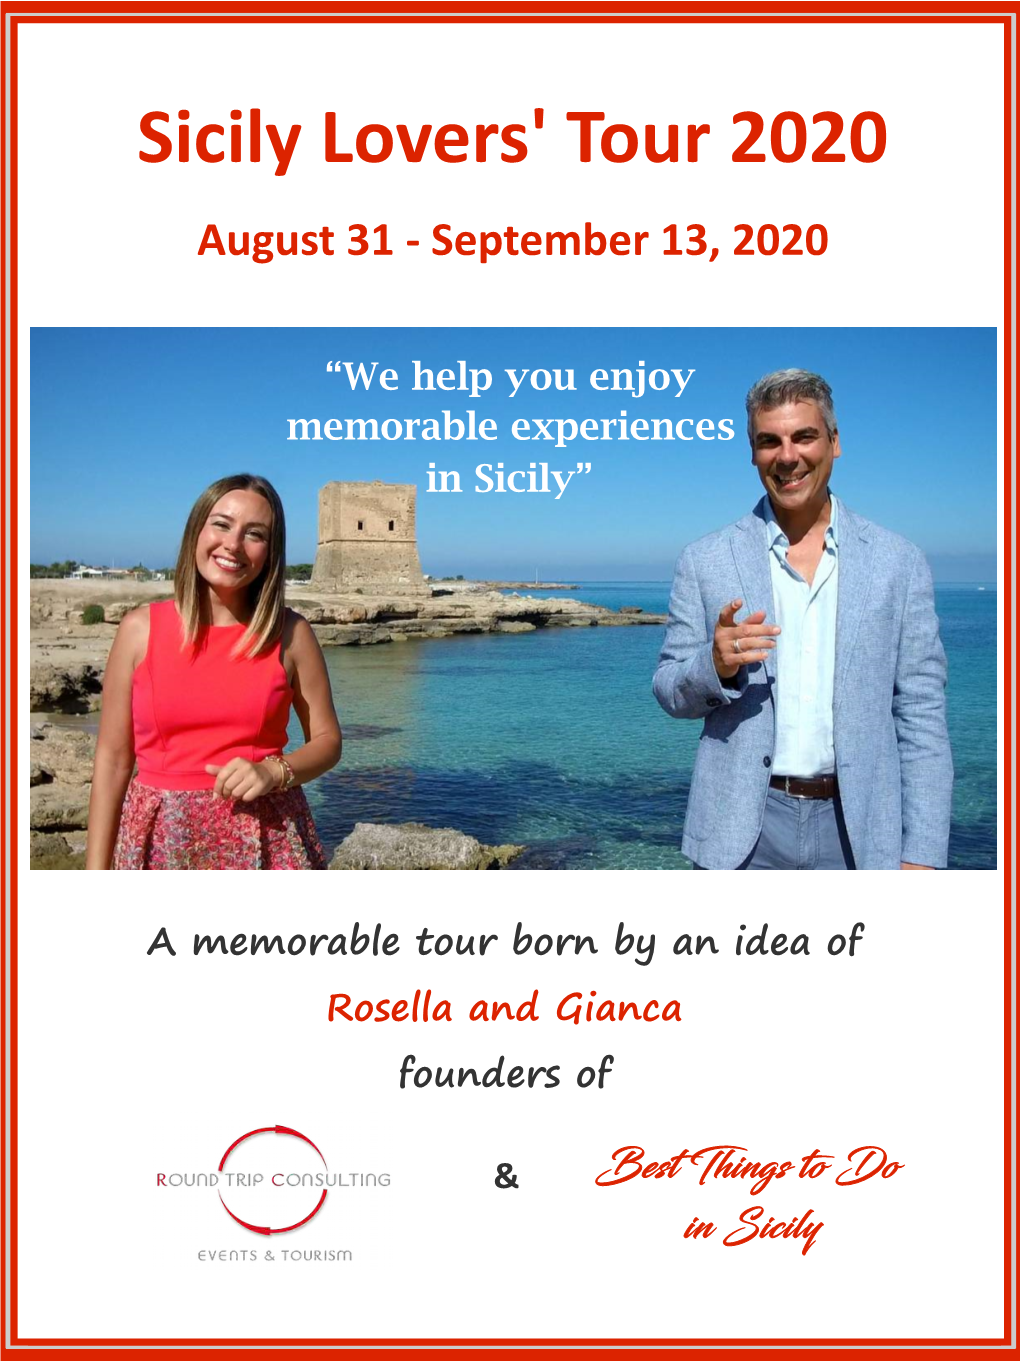 Sicily Lovers' Tour 2020 August 31 - September 13, 2020